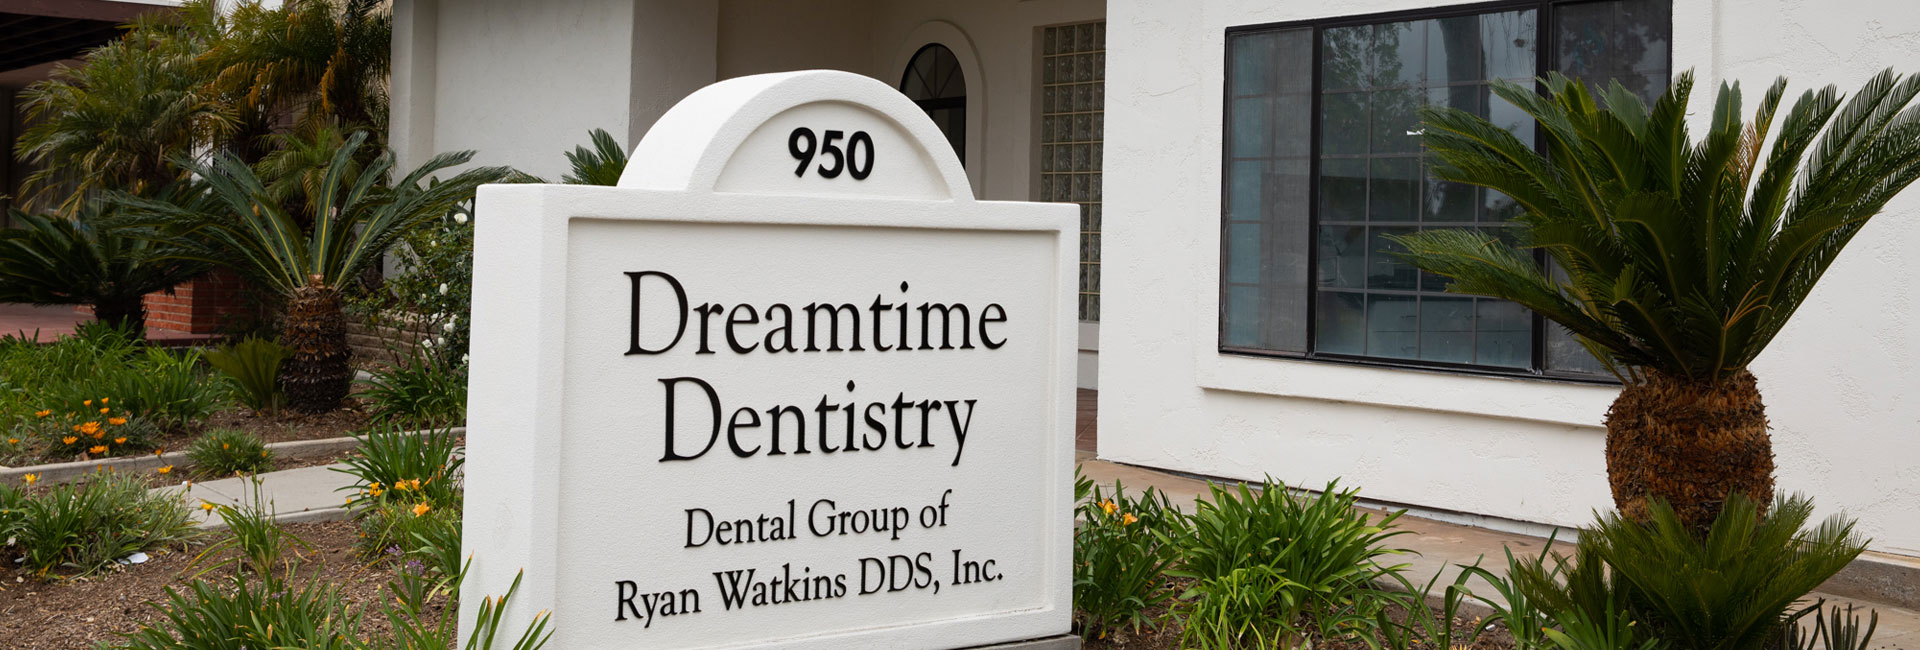 Dreamtime Dentistry Name Board